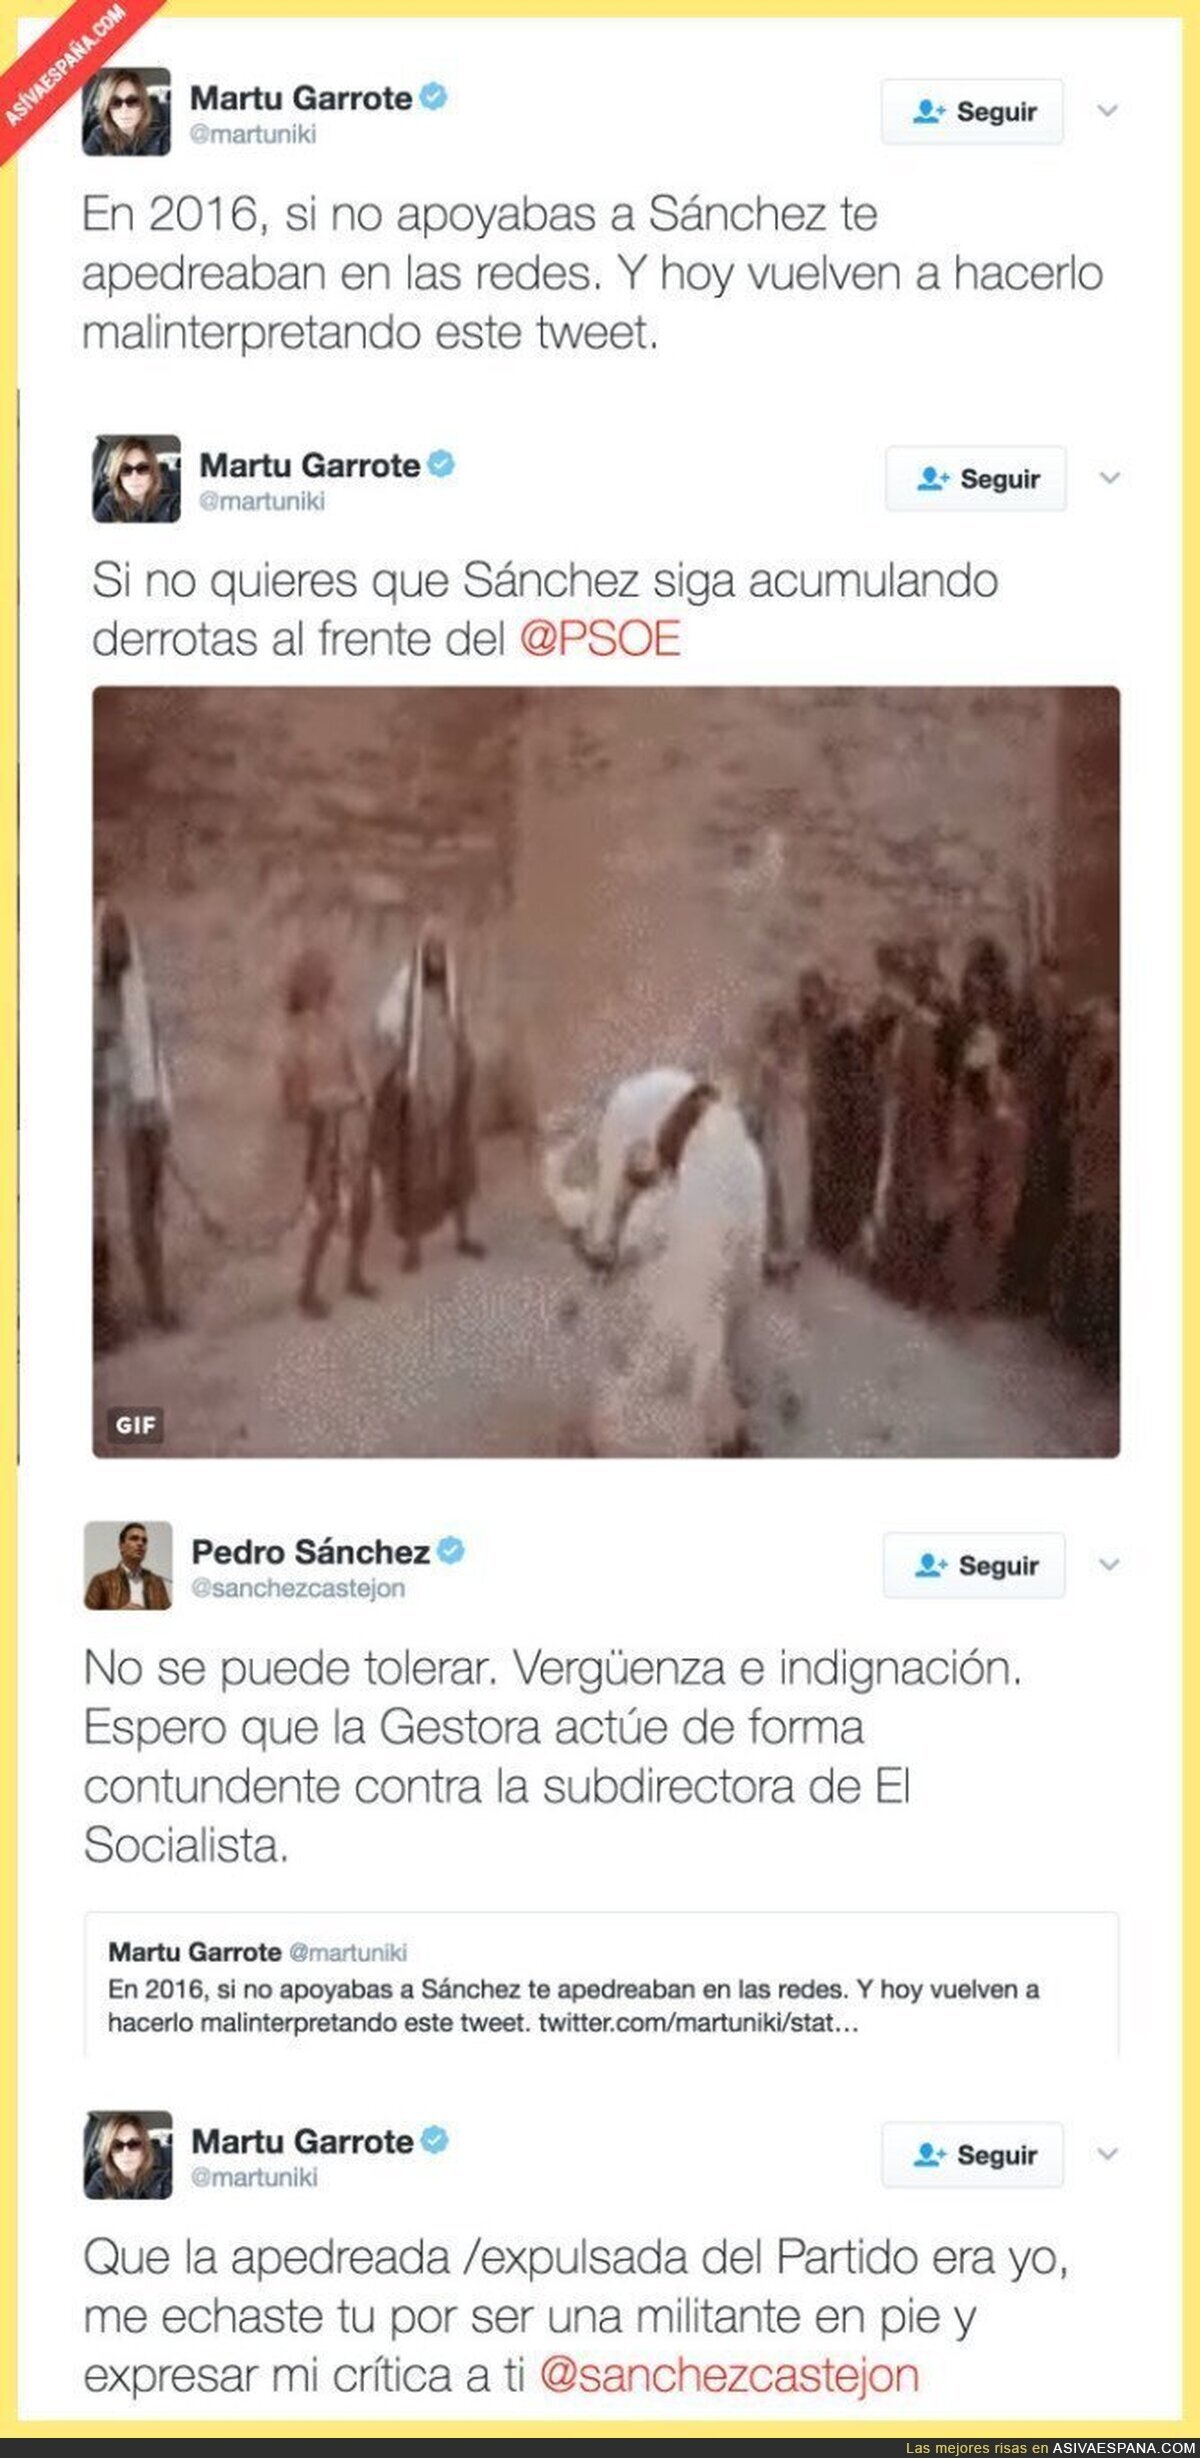 La indignación de Pedro Sánchez por este tuit de la subdirectora de "El Socialista"